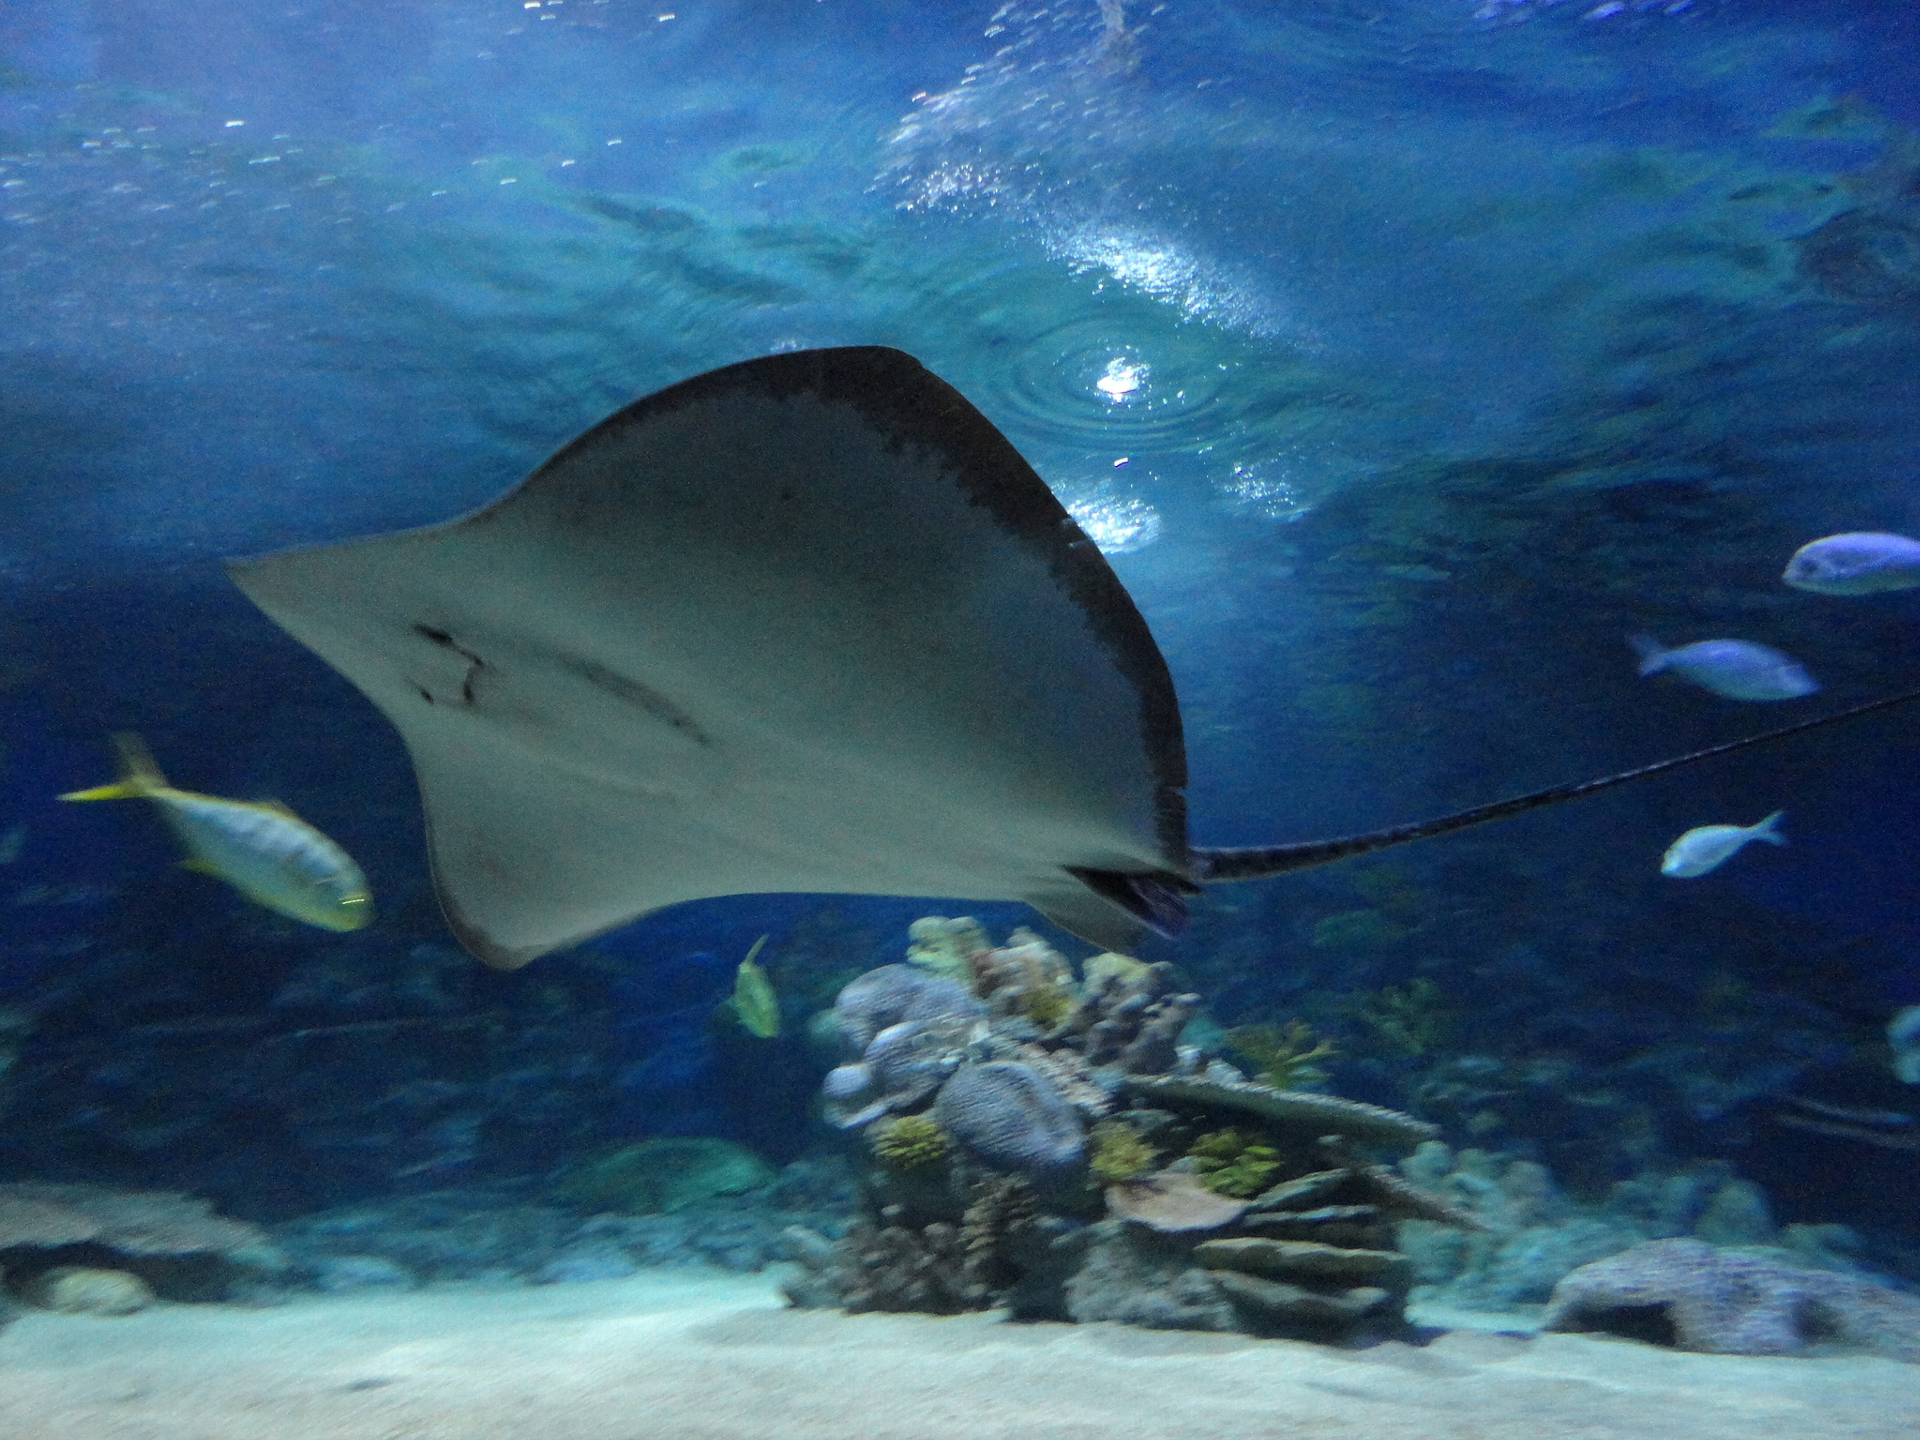 イスタンブール水族館 フロリヤ の観光情報 料金 行き方 営業時間 Howtravel